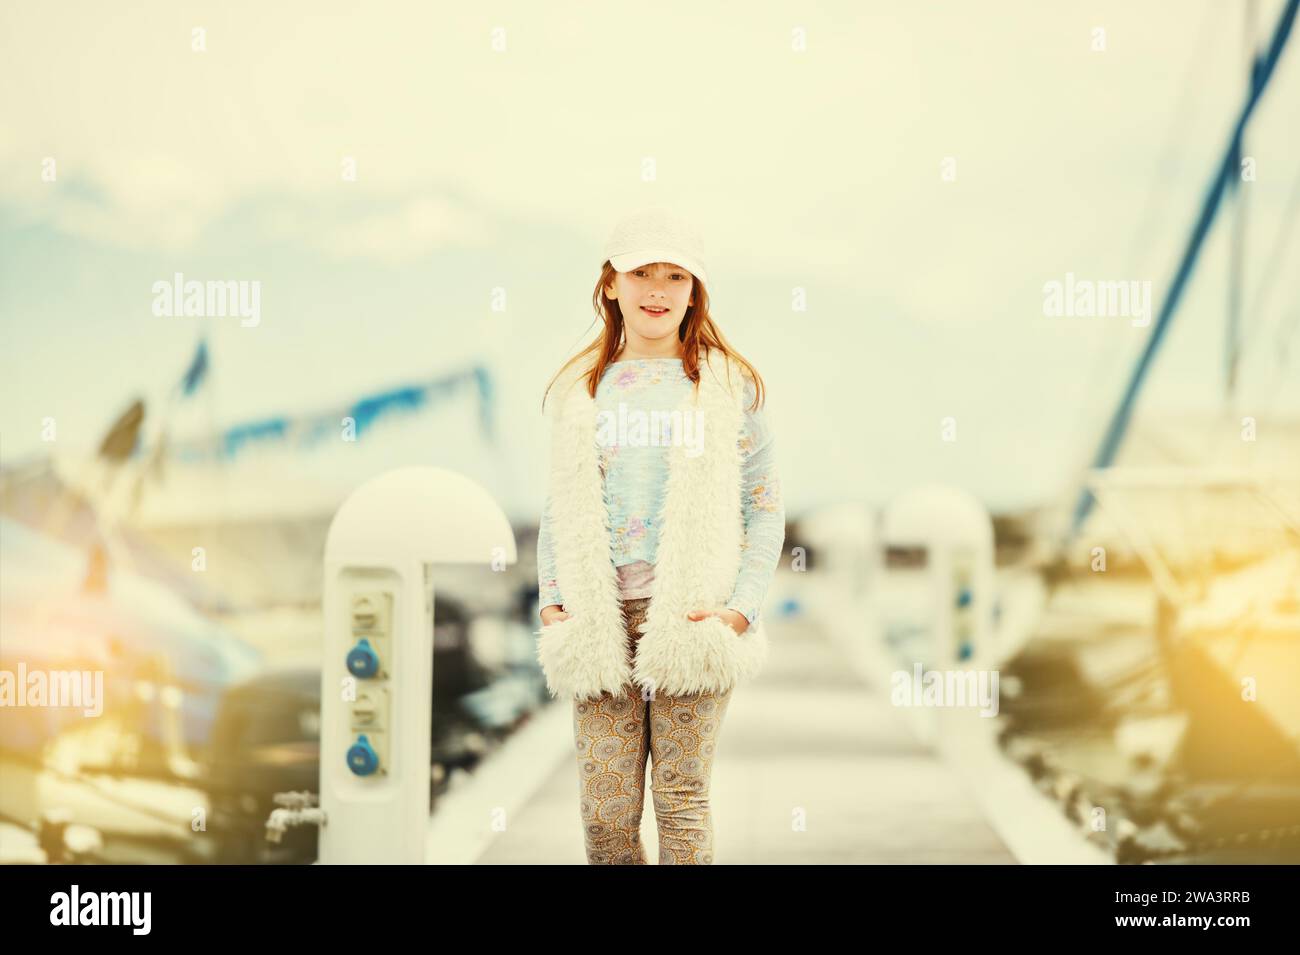 Ritratto di moda all'aperto di una giovane ragazza preadolescente che indossa un berretto bianco, un gilet in pelliccia sintetica, che gioca in un porto in una giornata molto soleggiata e con un'immagine tonica Foto Stock